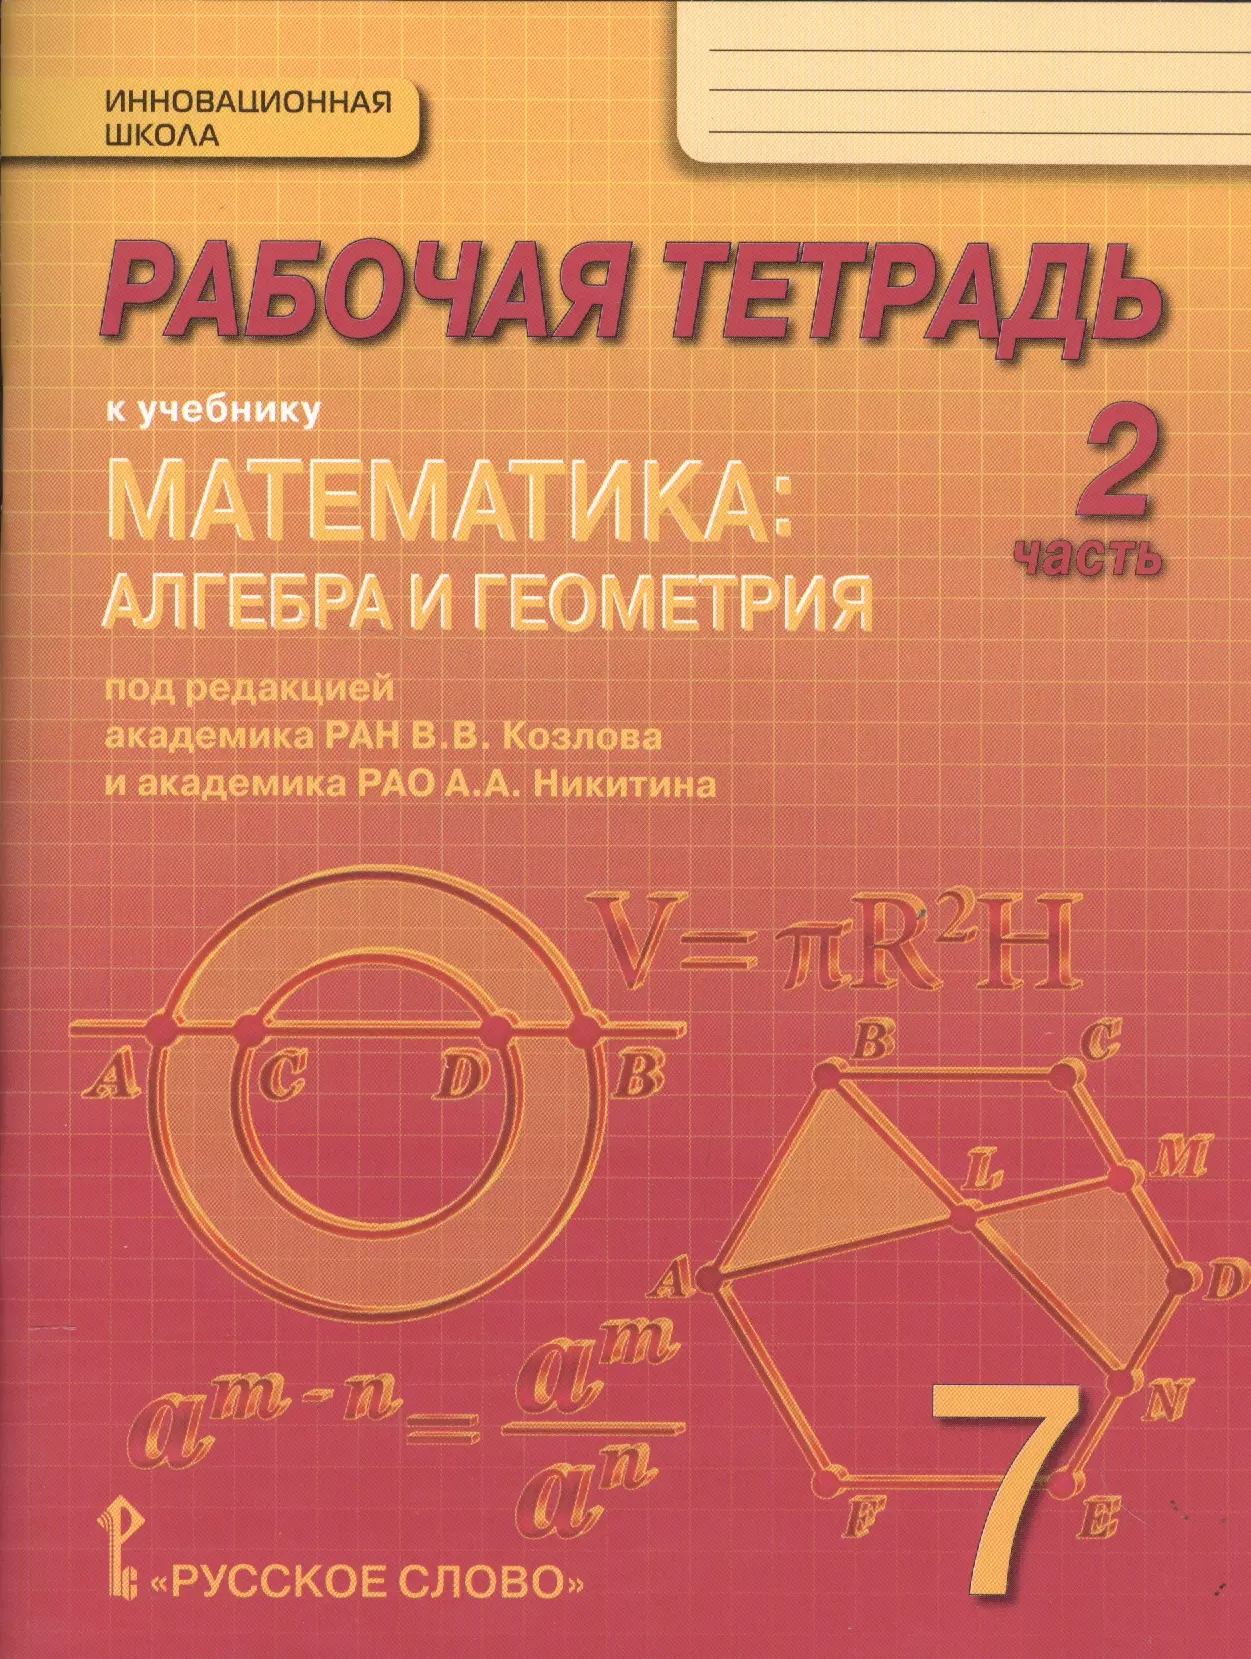 Рабочая тетрадь к учебнику Математика: алгебра и геометрия. 7 класс, 2 часть